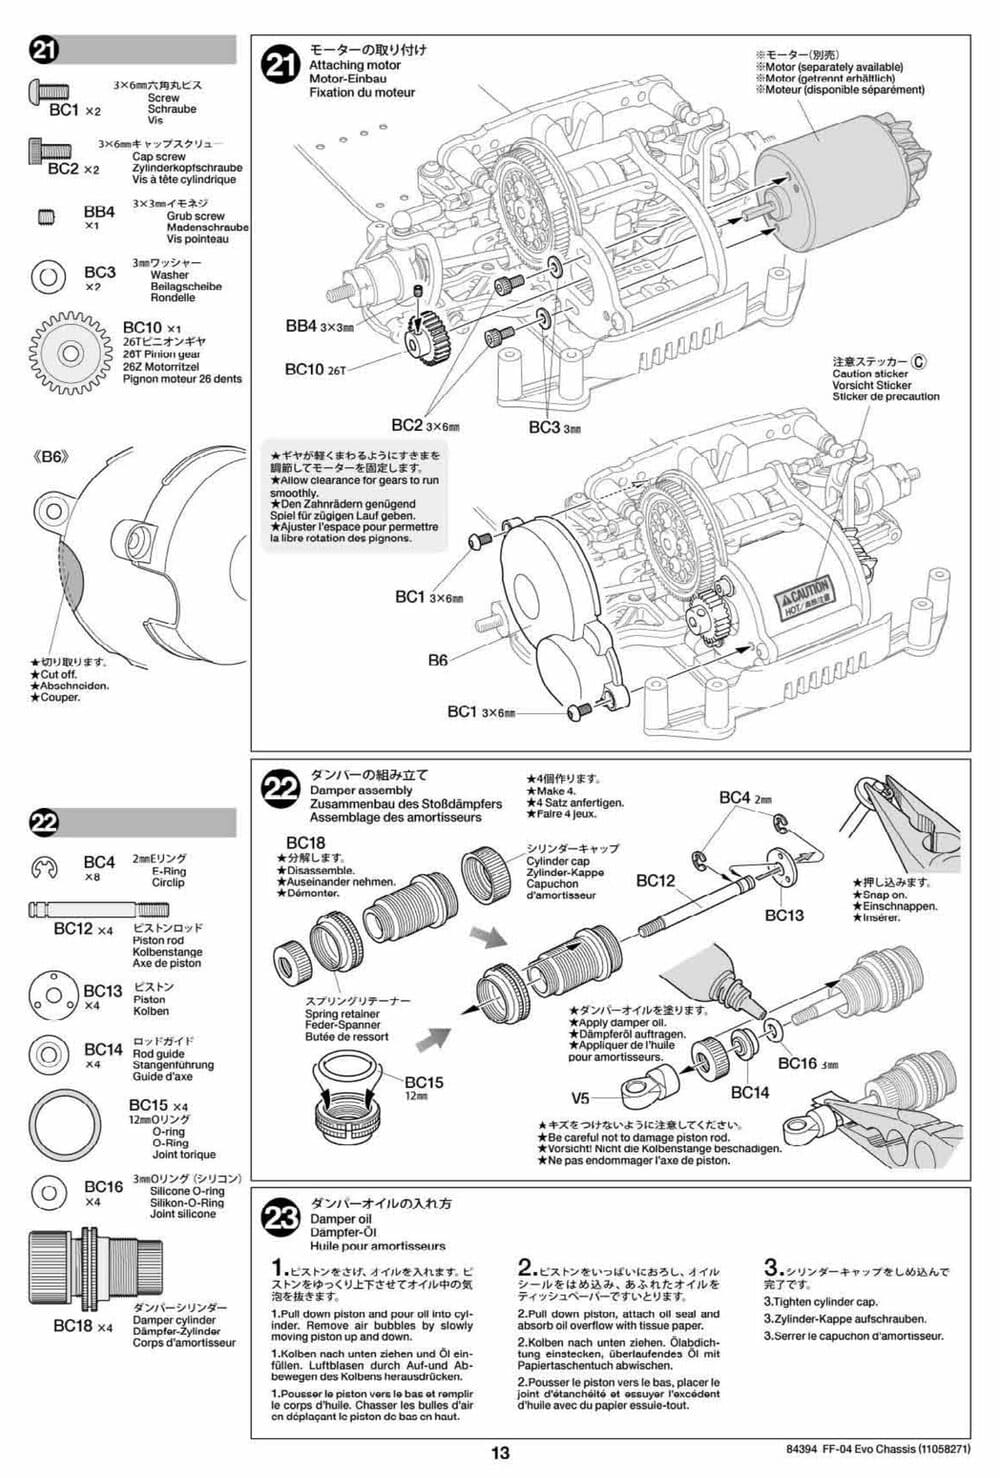 Tamiya - FF-04 Evo Chassis - Manual - Page 13